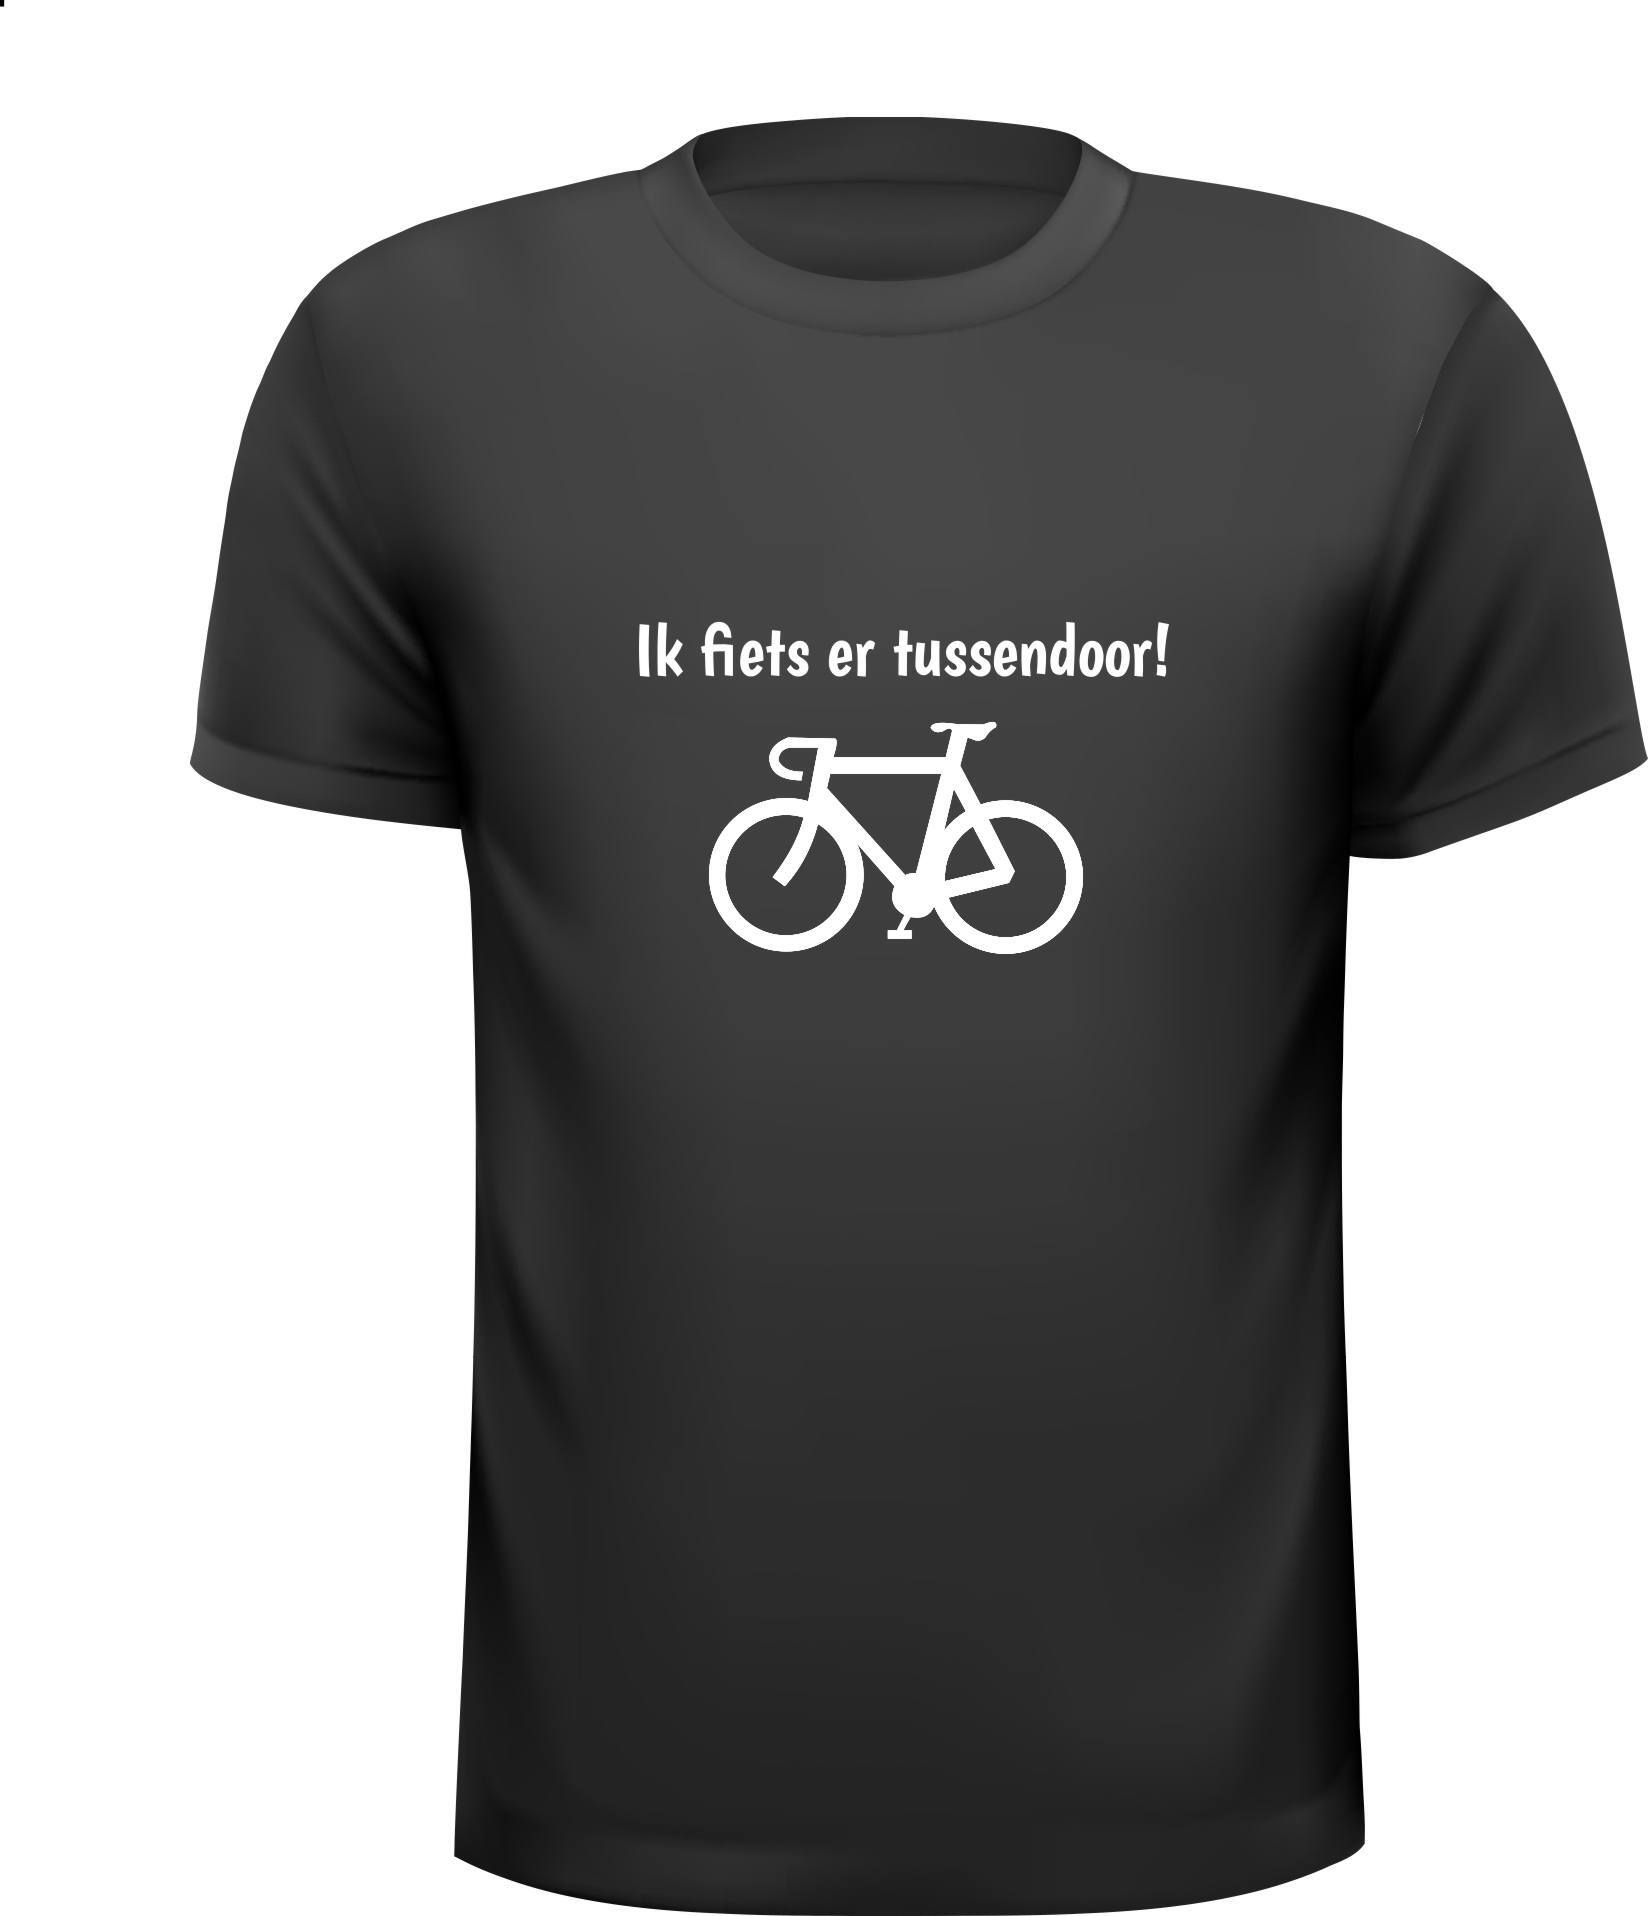 Ik fiets er tussendoor T-shirt spreekwoord grappig